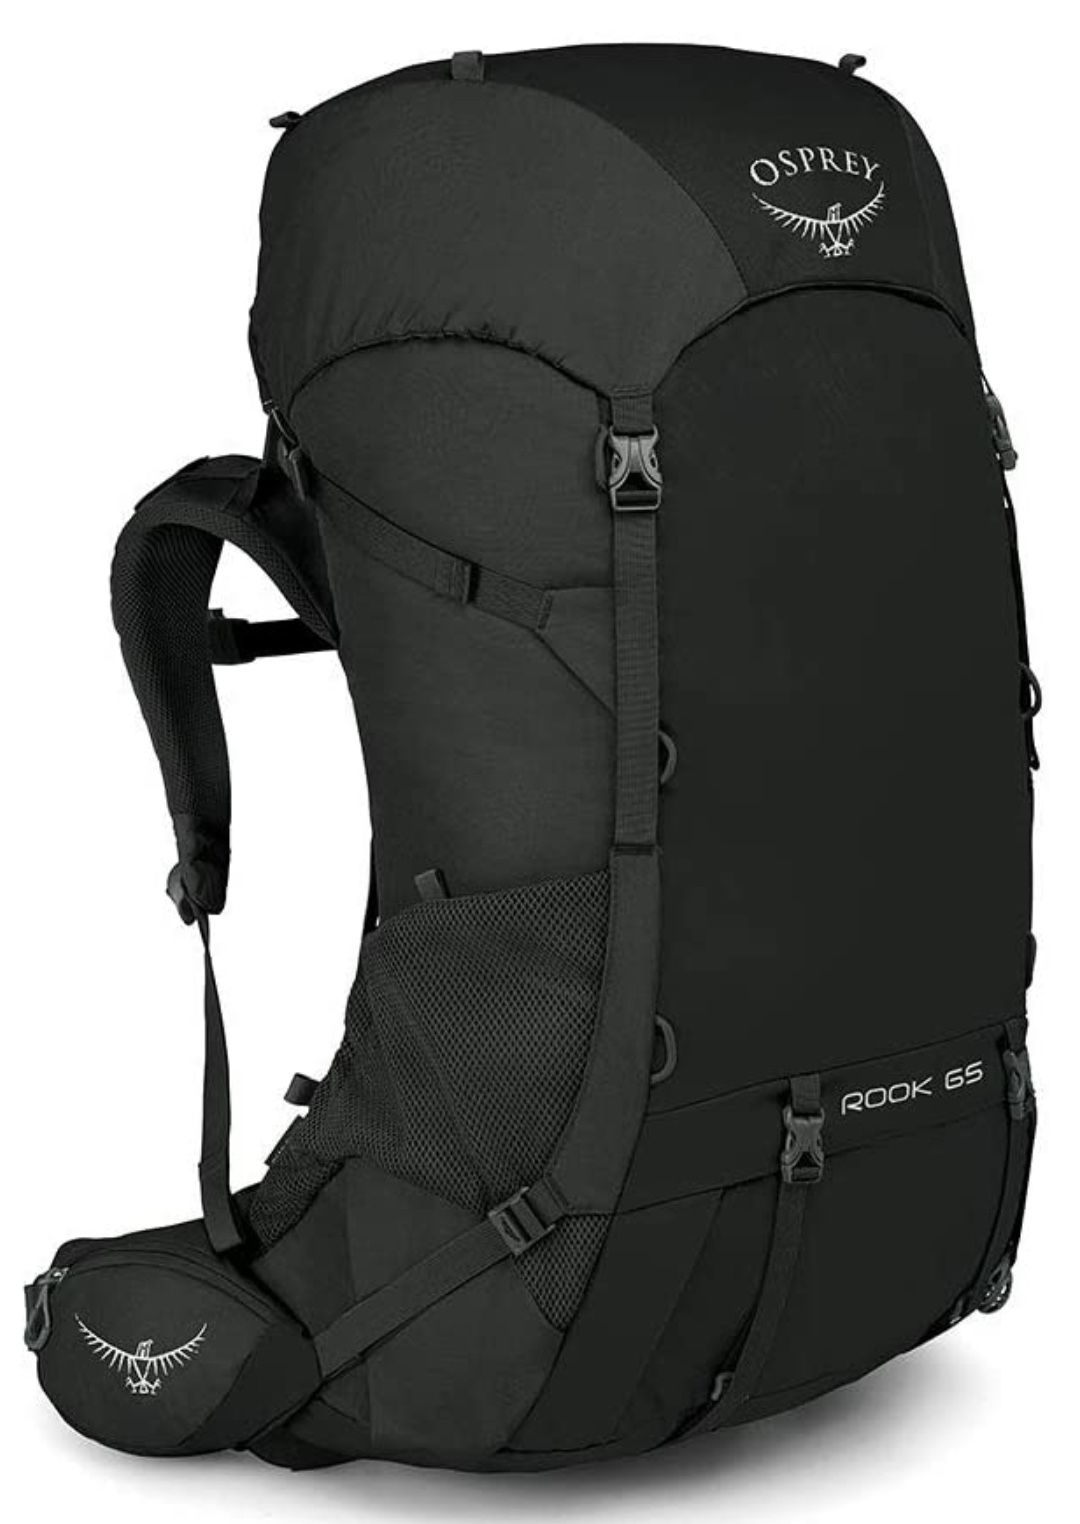 Osprey Rook 65 Backpack for backpacking